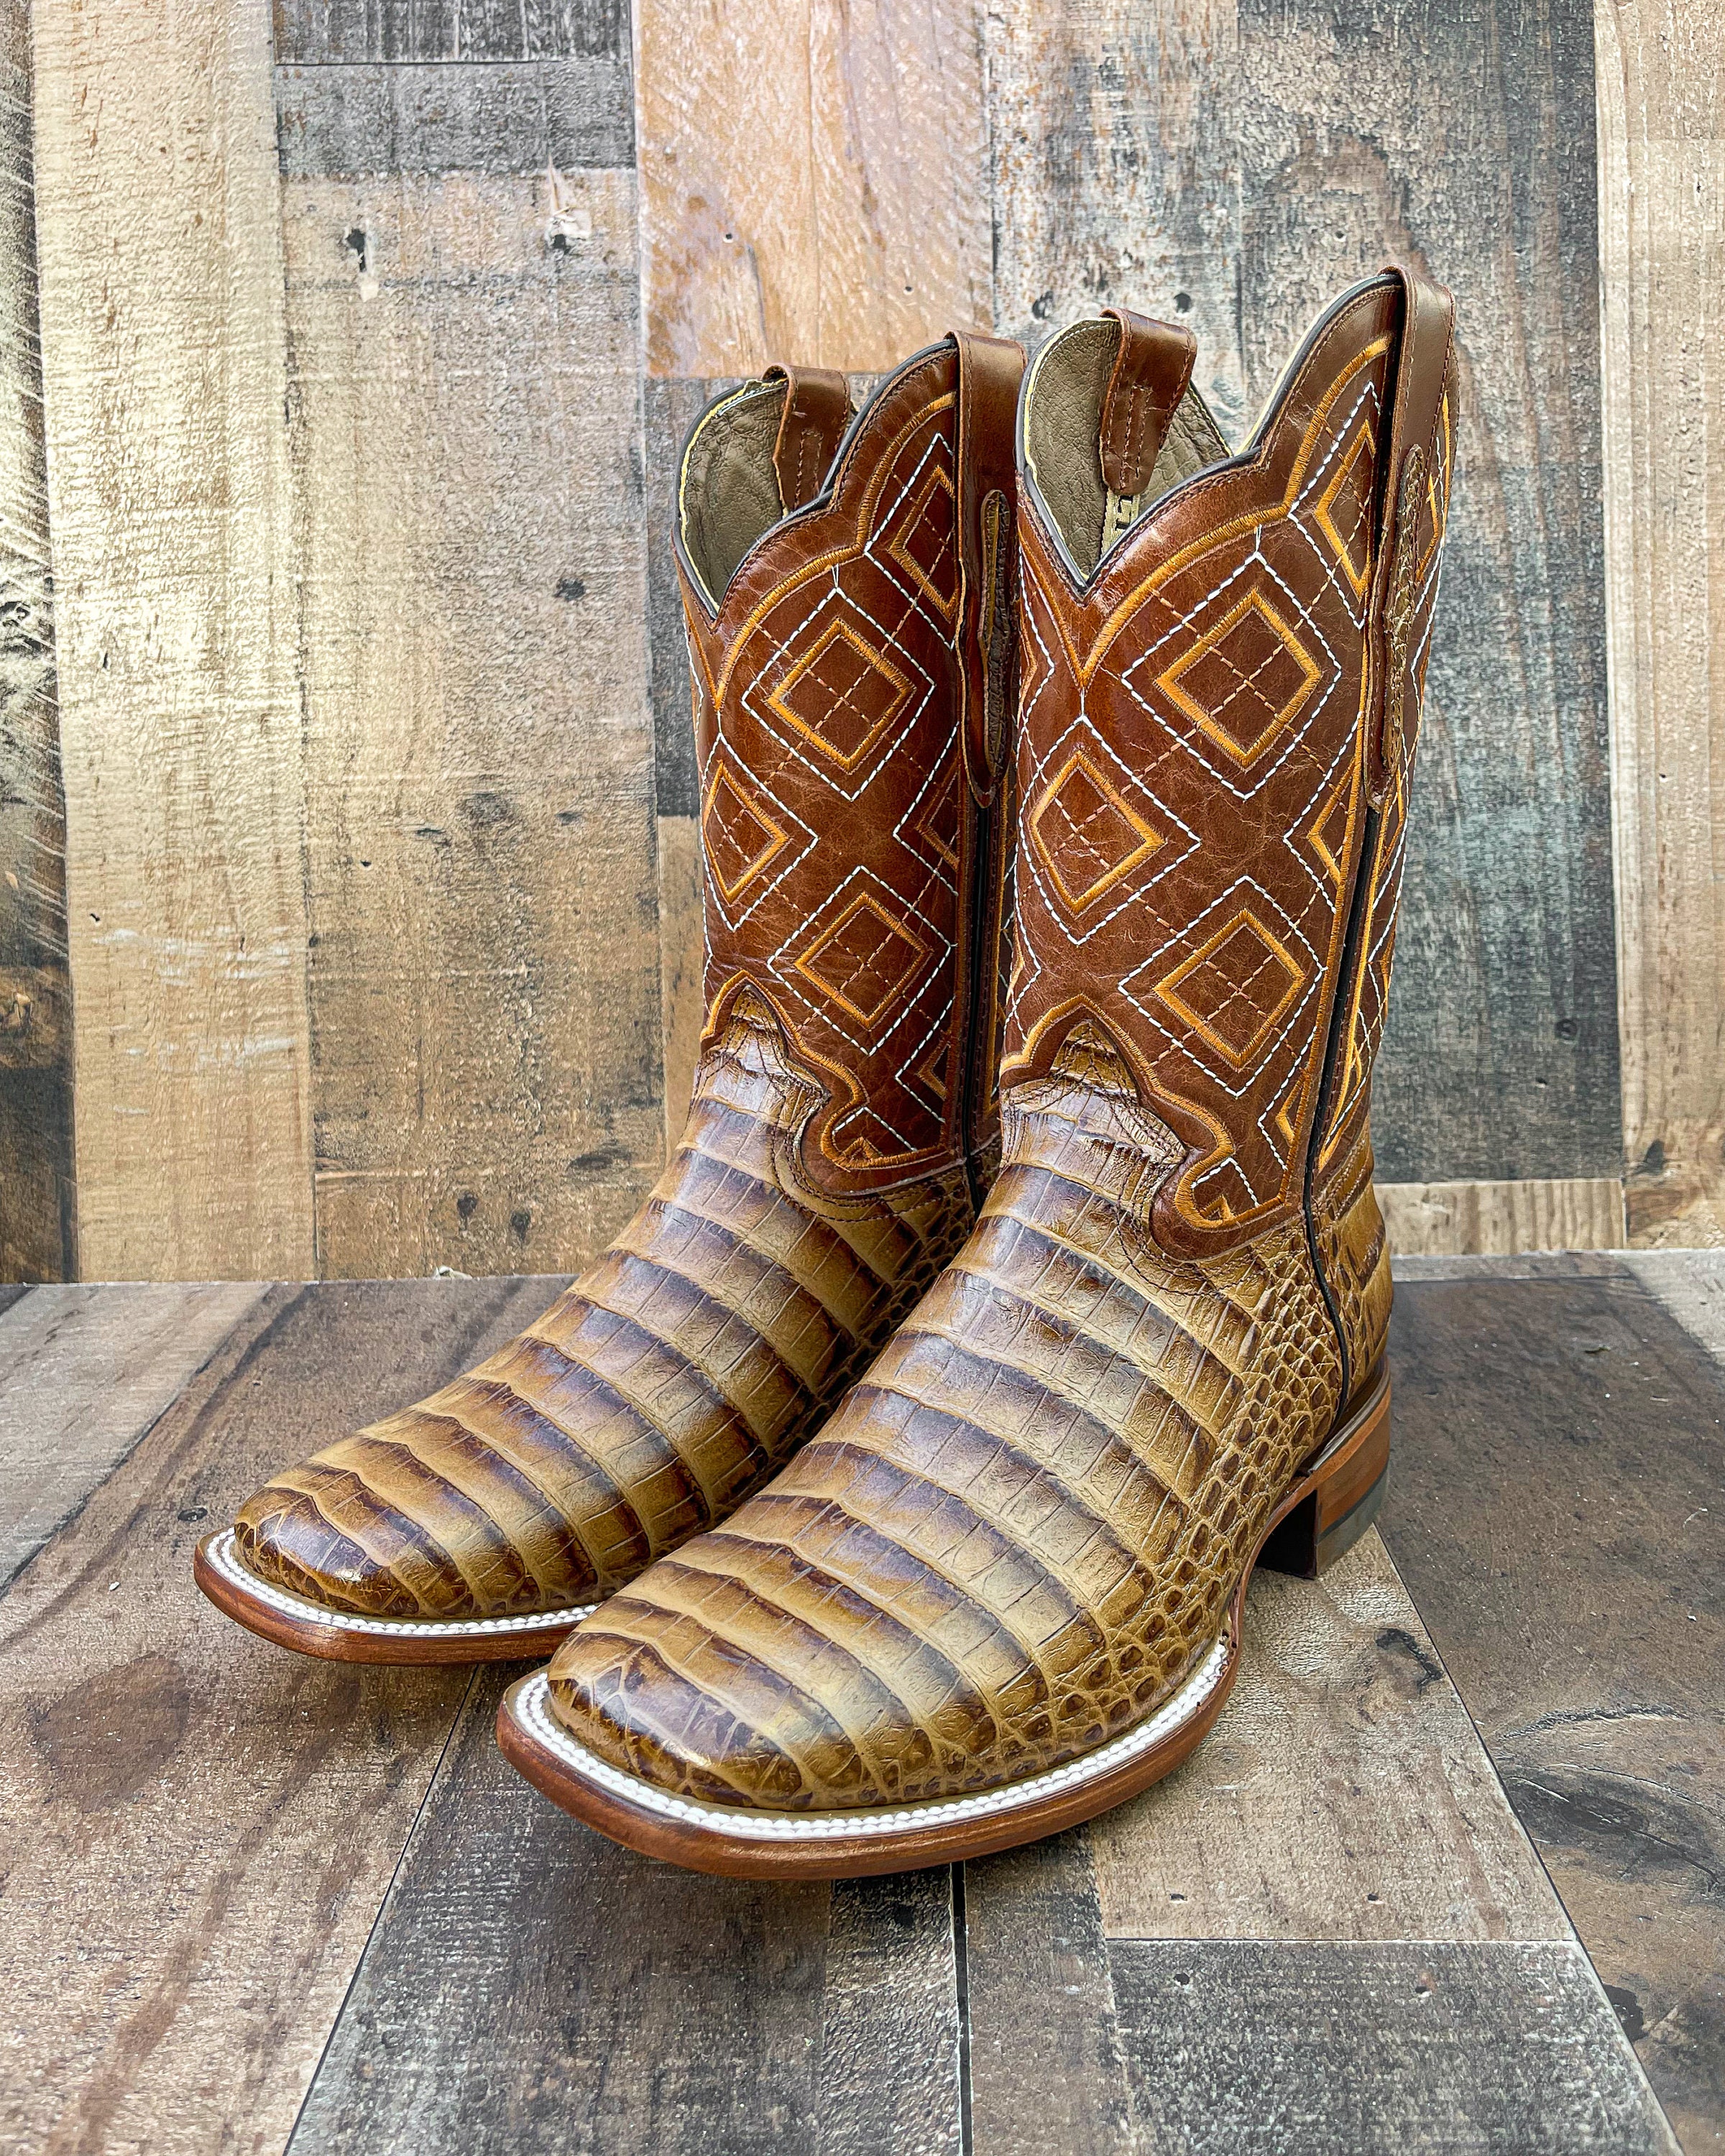 Men’s Square Toe Cowboy Boots. Botas Vaqueras De Hombre Con Punta Cuadrada.  